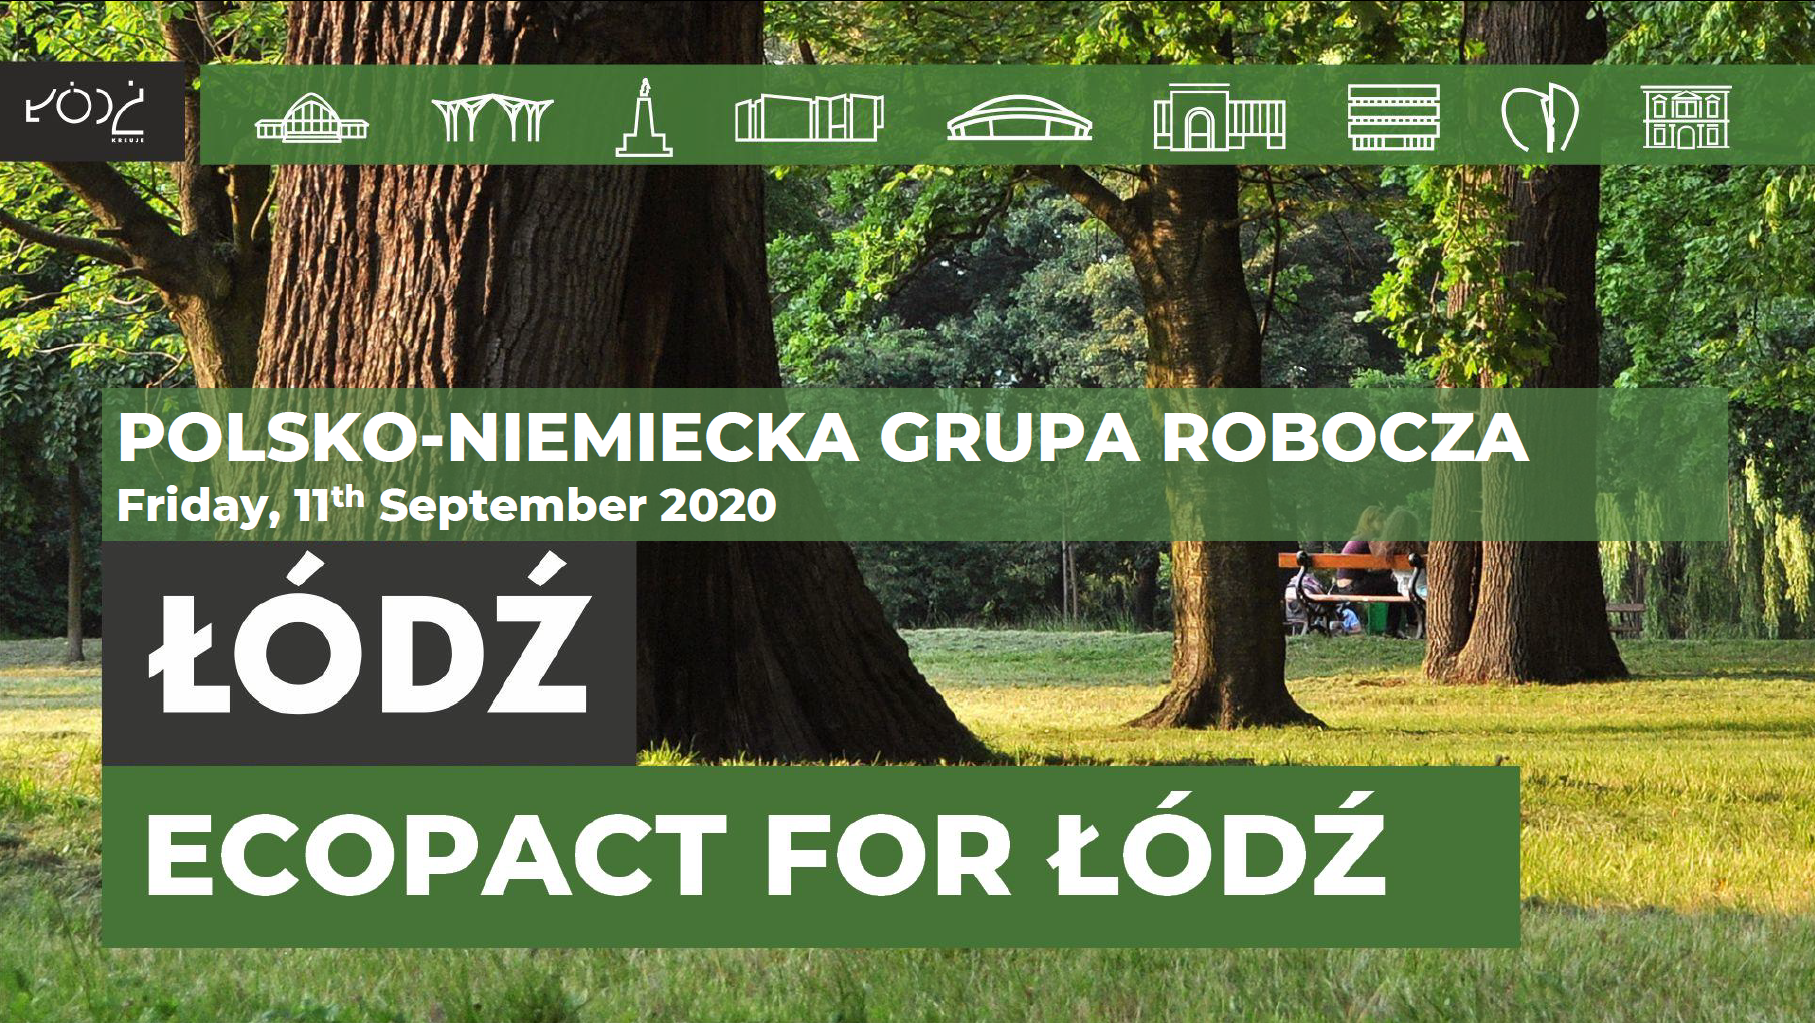 Vorgestellt wurde der ECOpact für Łódź, dessen Initiativen sich den Themen des European Green Deal zuordnen lassen